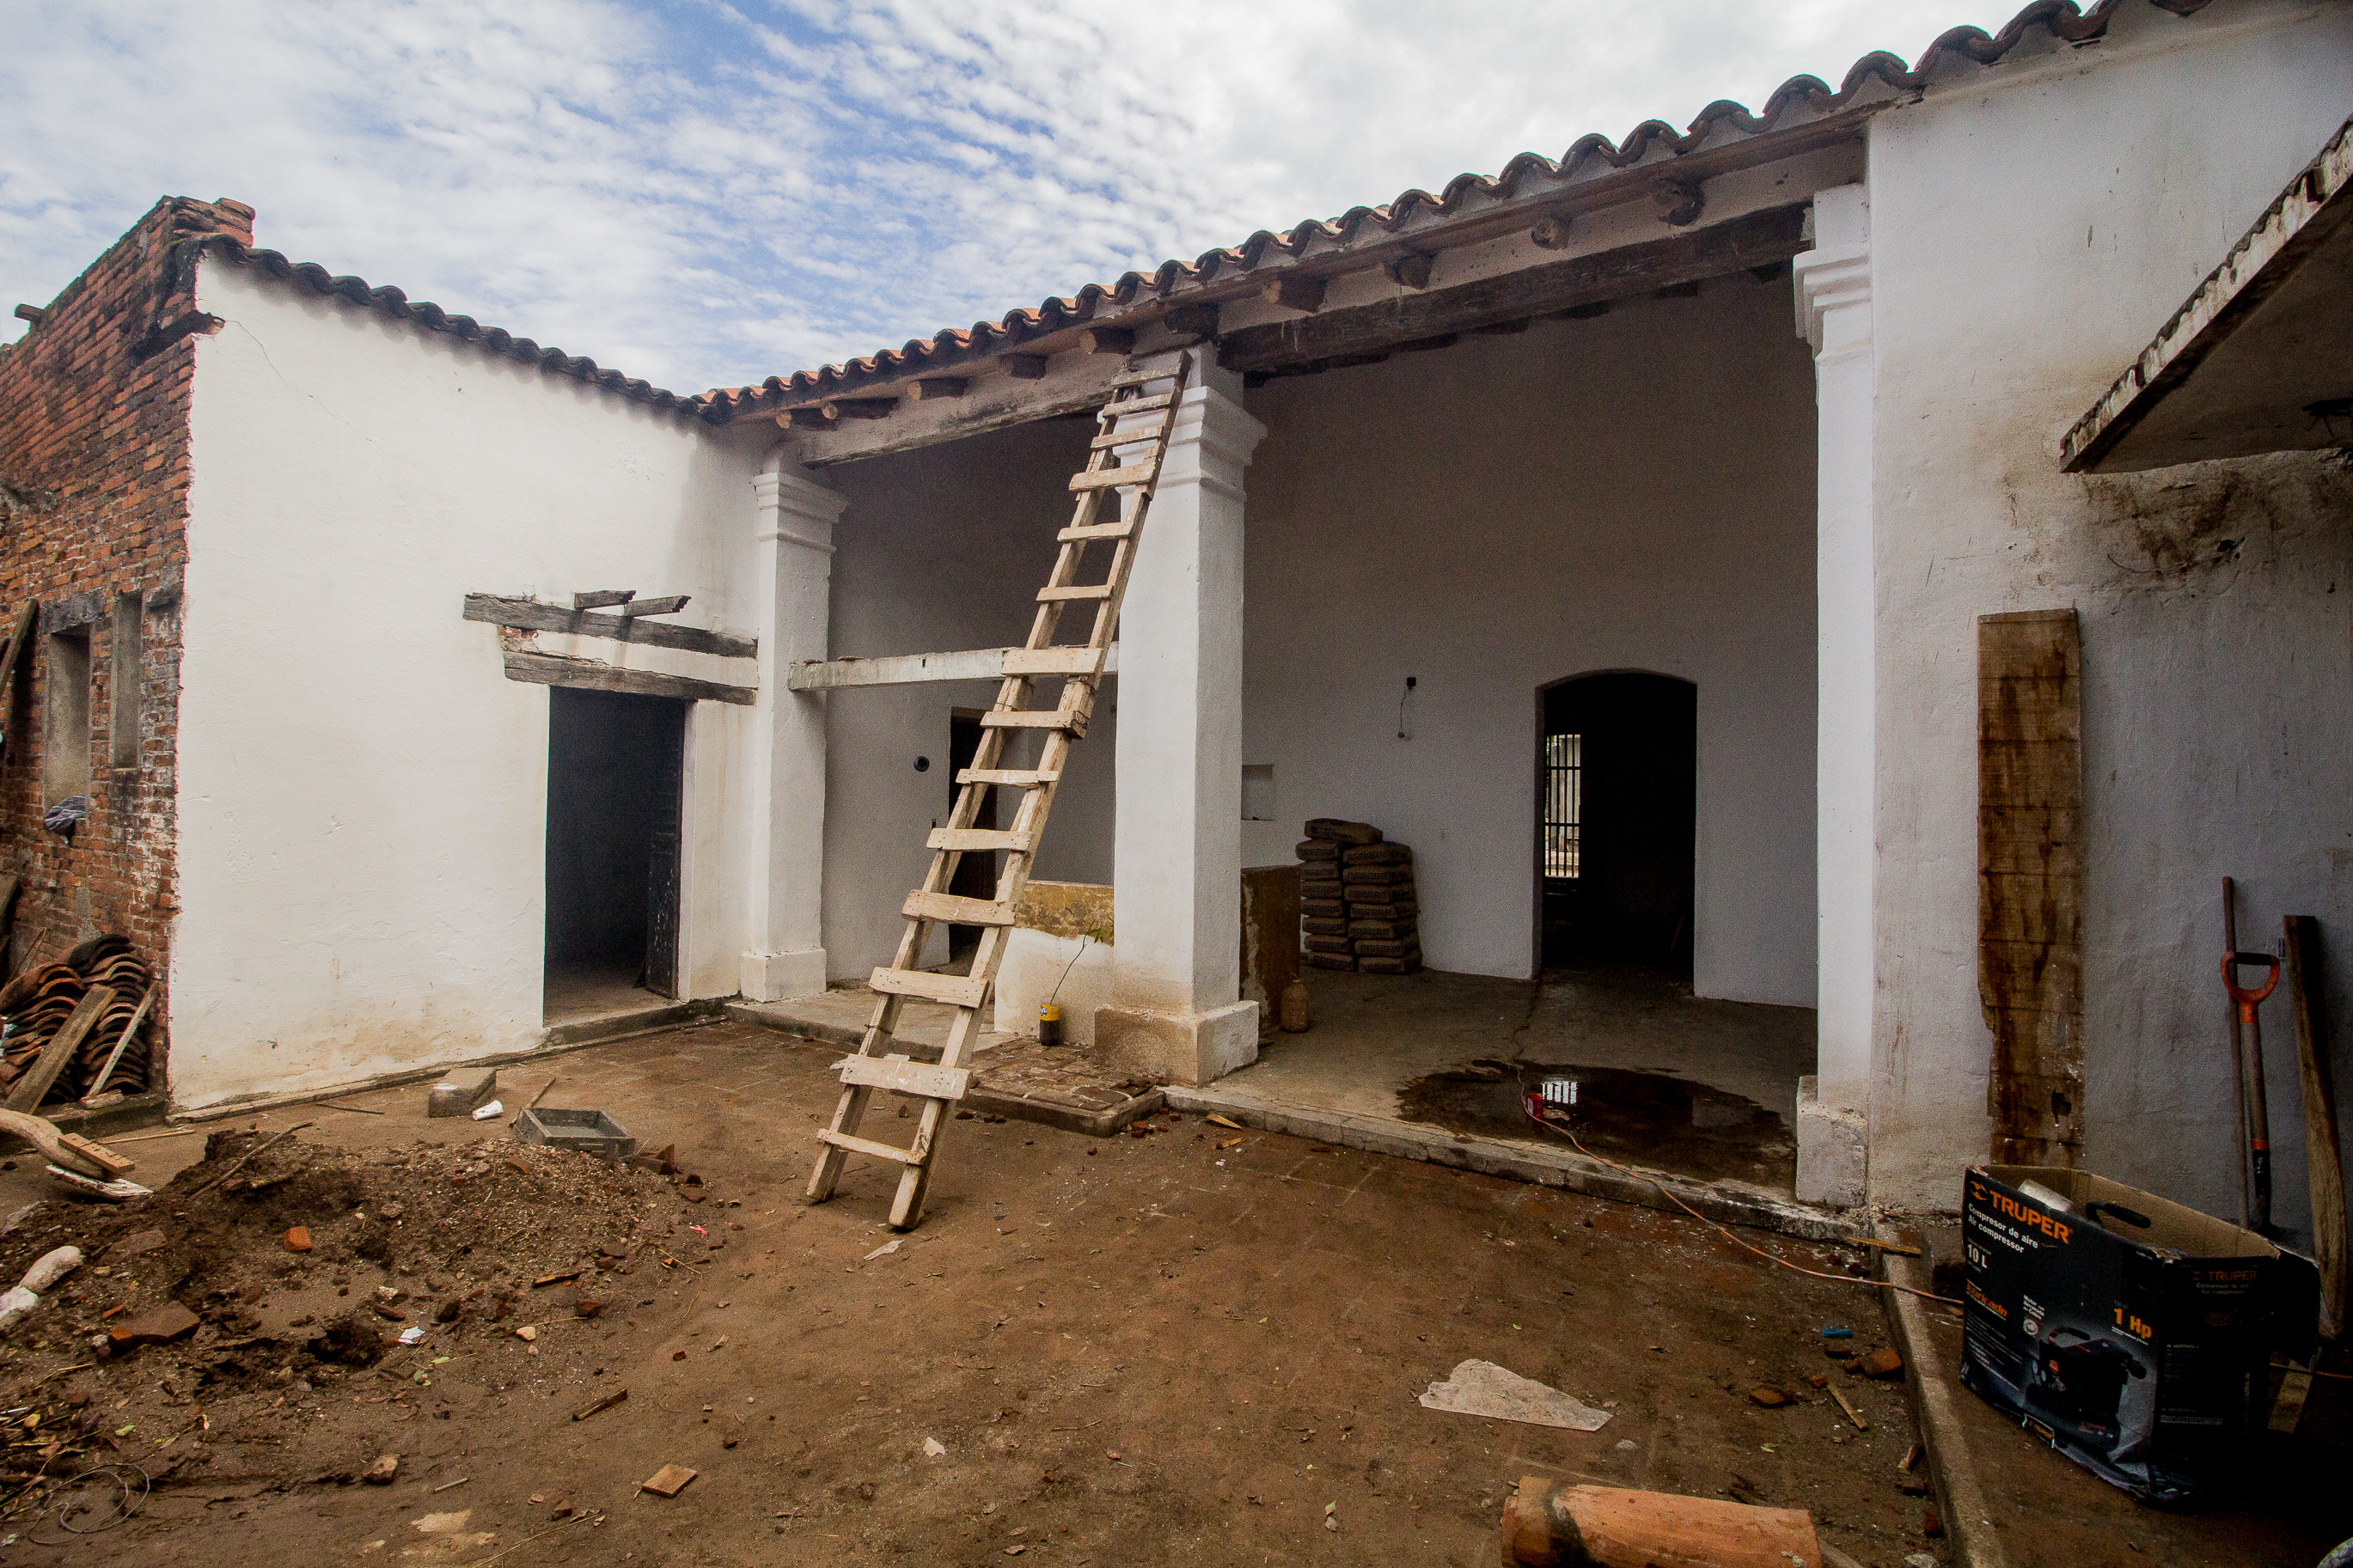 Integrar tradiciones del lugar, clave para reconstruir tras un sismo